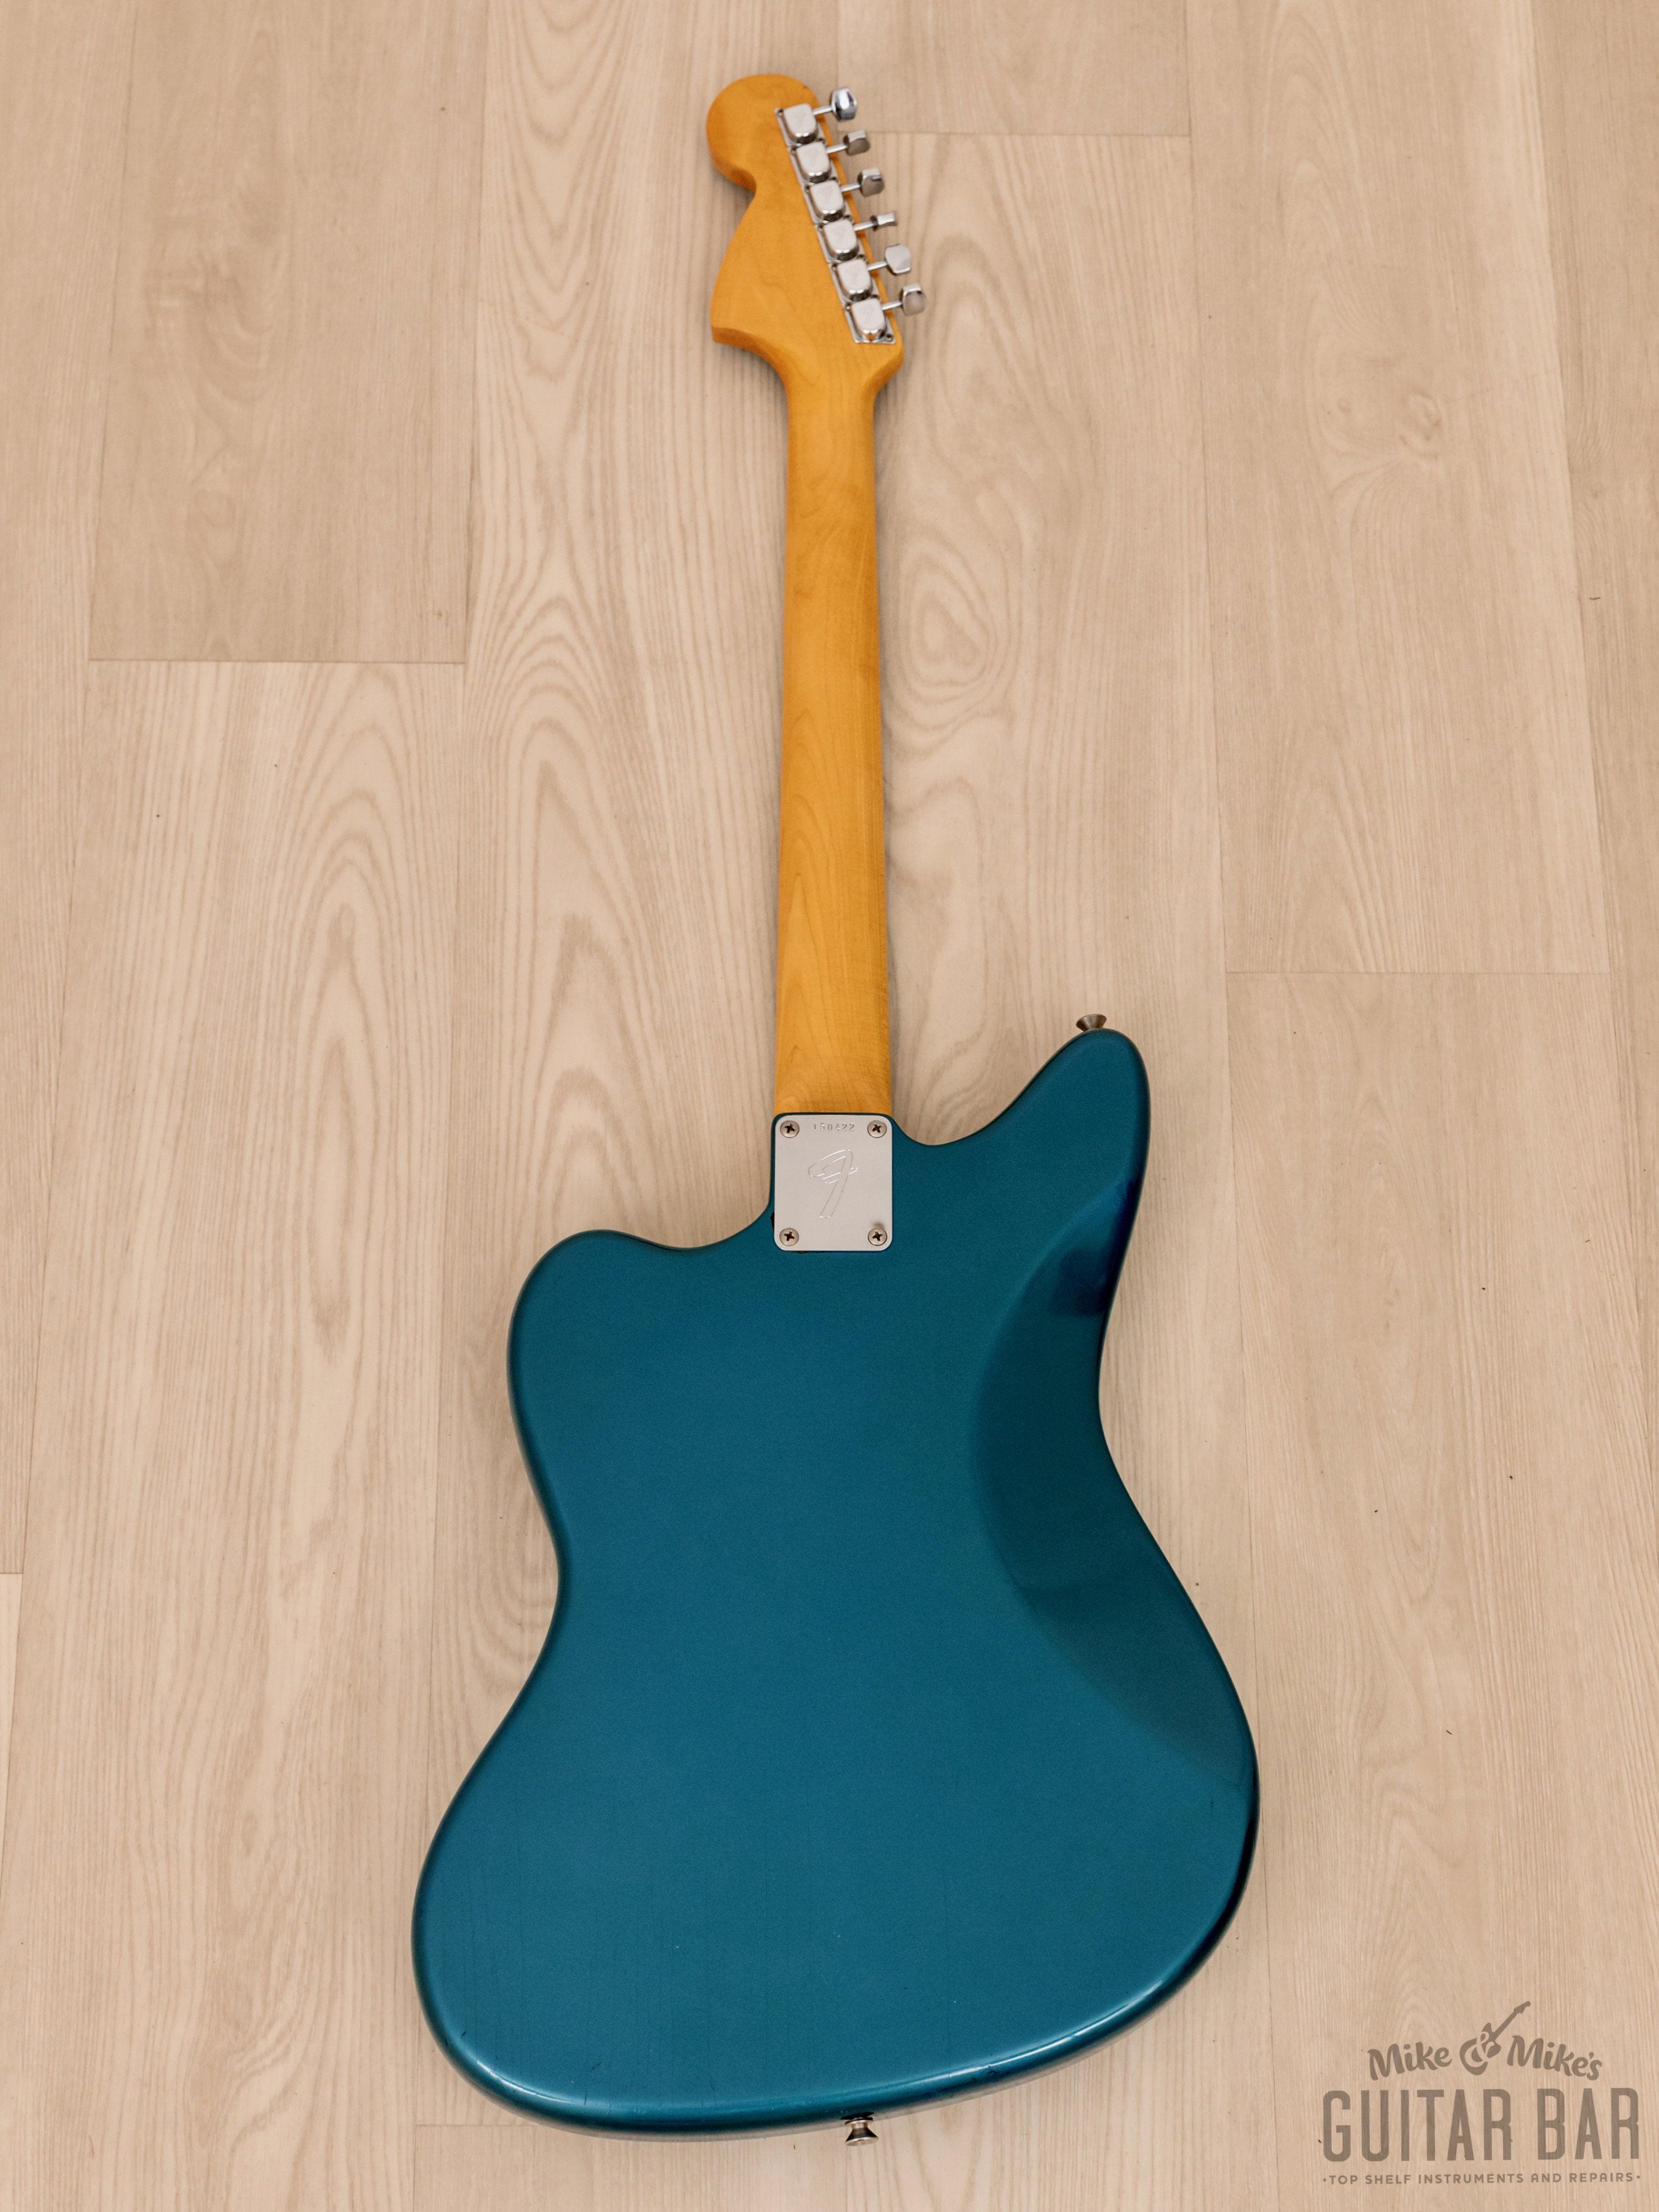 1966 Fender Jaguar Vintage Offset Guitar Lake Placid Blue 100% Original w/ Case